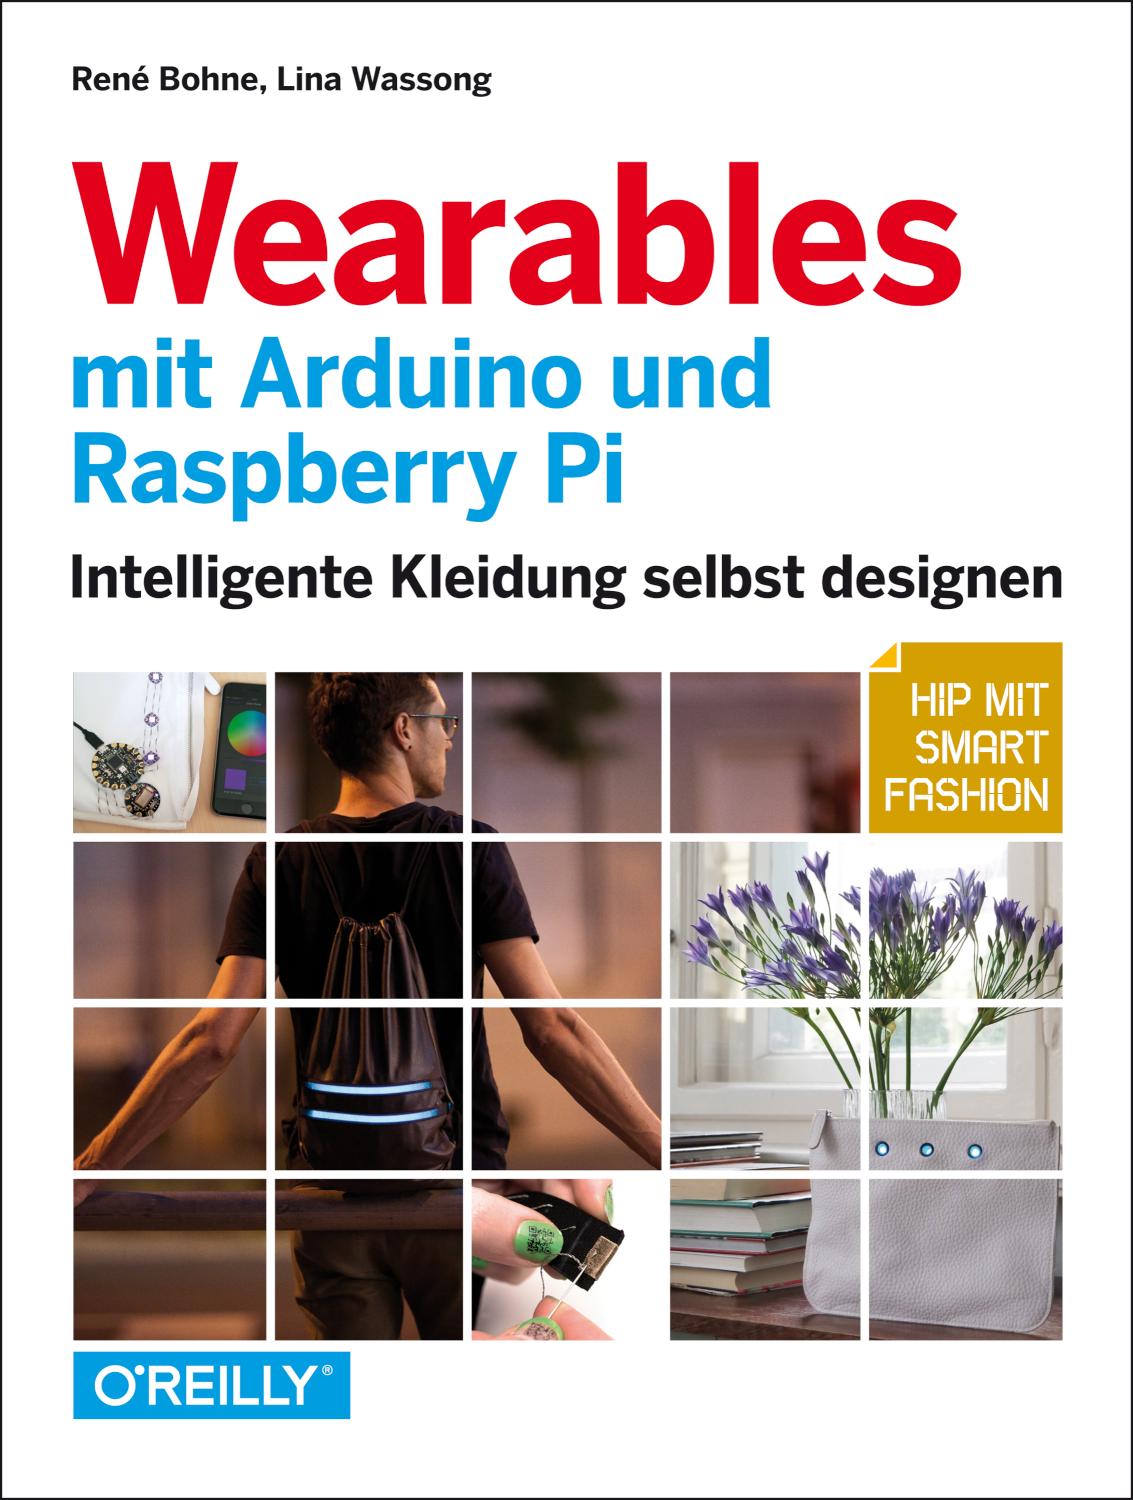 Wearables mit Arduino und Raspberry Pi Intelligente Kleidung selbst designen - Hip mit Smart Fashion